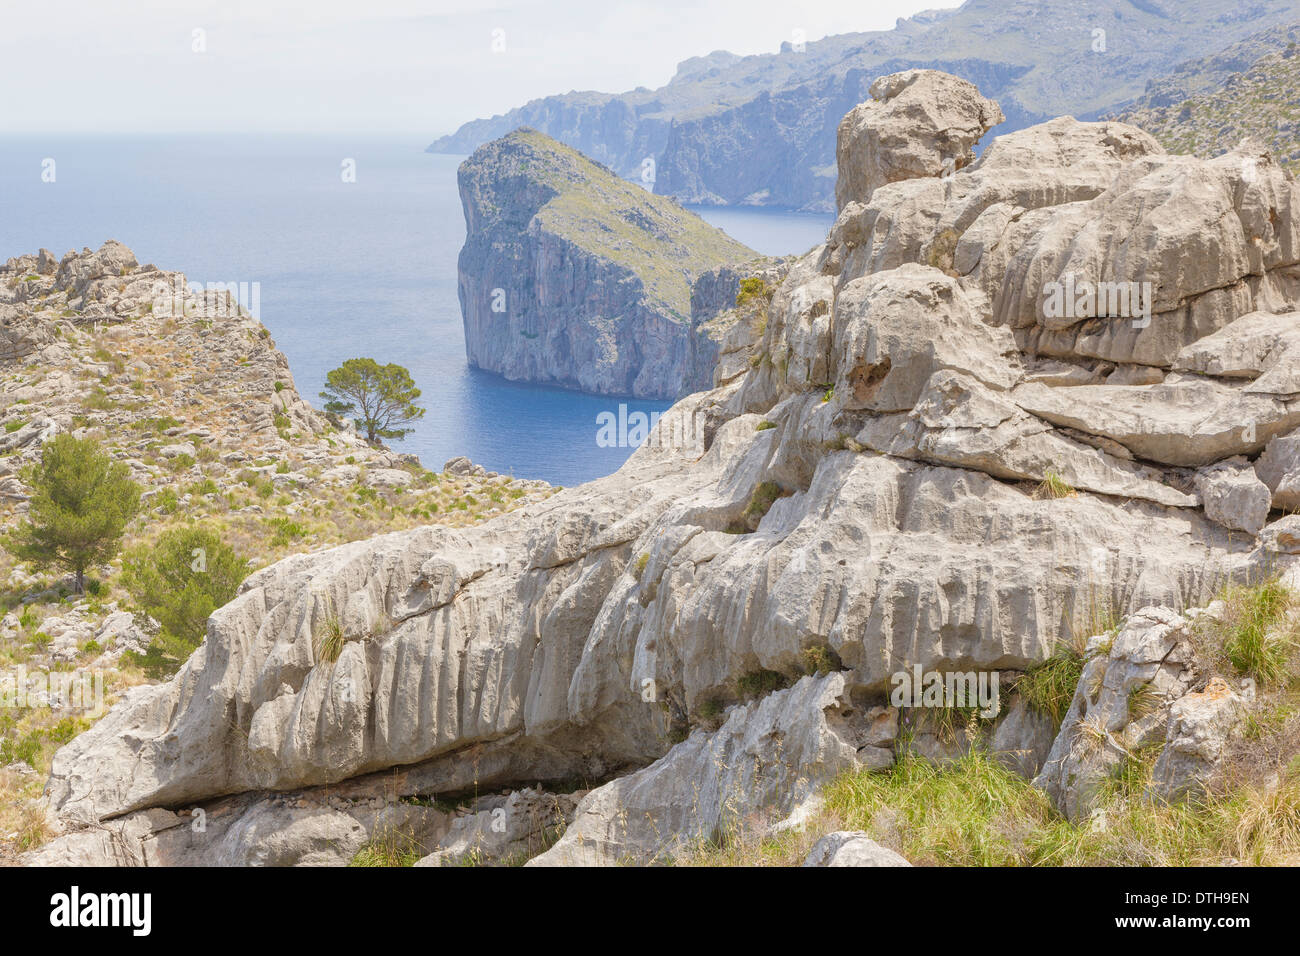 Kalkfelsen geprägt durch Wassererosion. La Calobra Bereich, Tramuntana Berge, Escorca Region, Mallorca, Balearen, Spanien Stockfoto